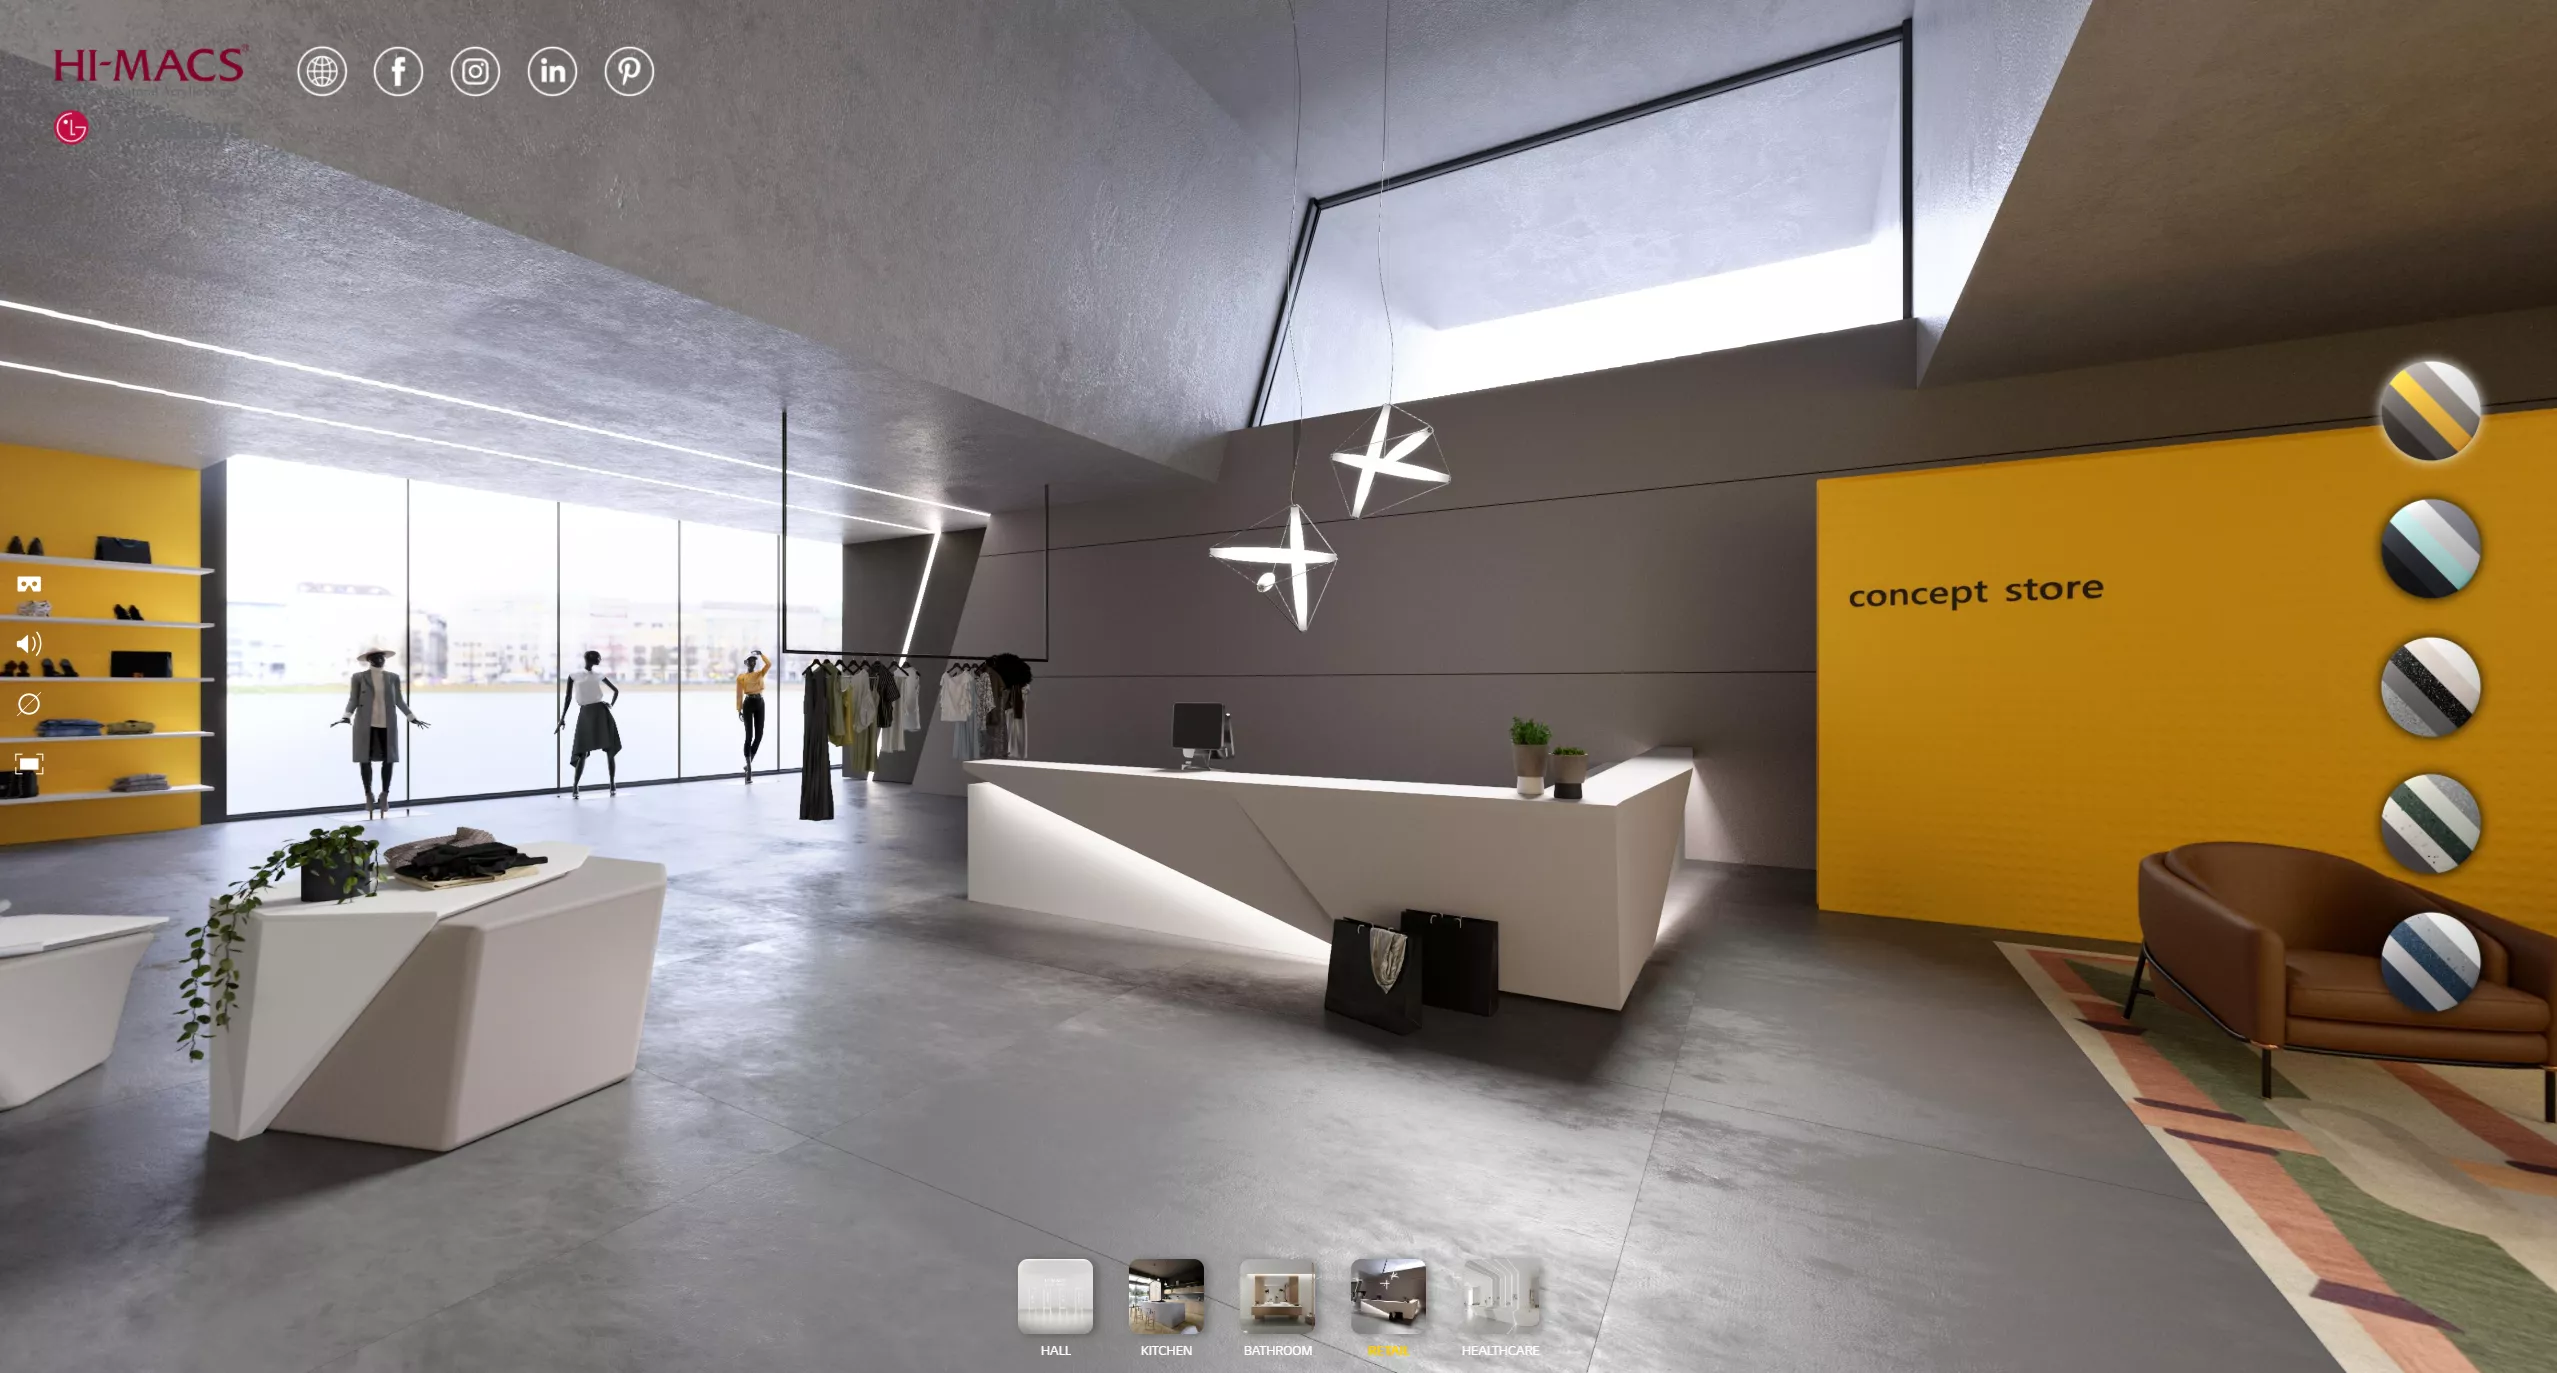 HIMACS lance un tout nouveau showroom interactif virtuel